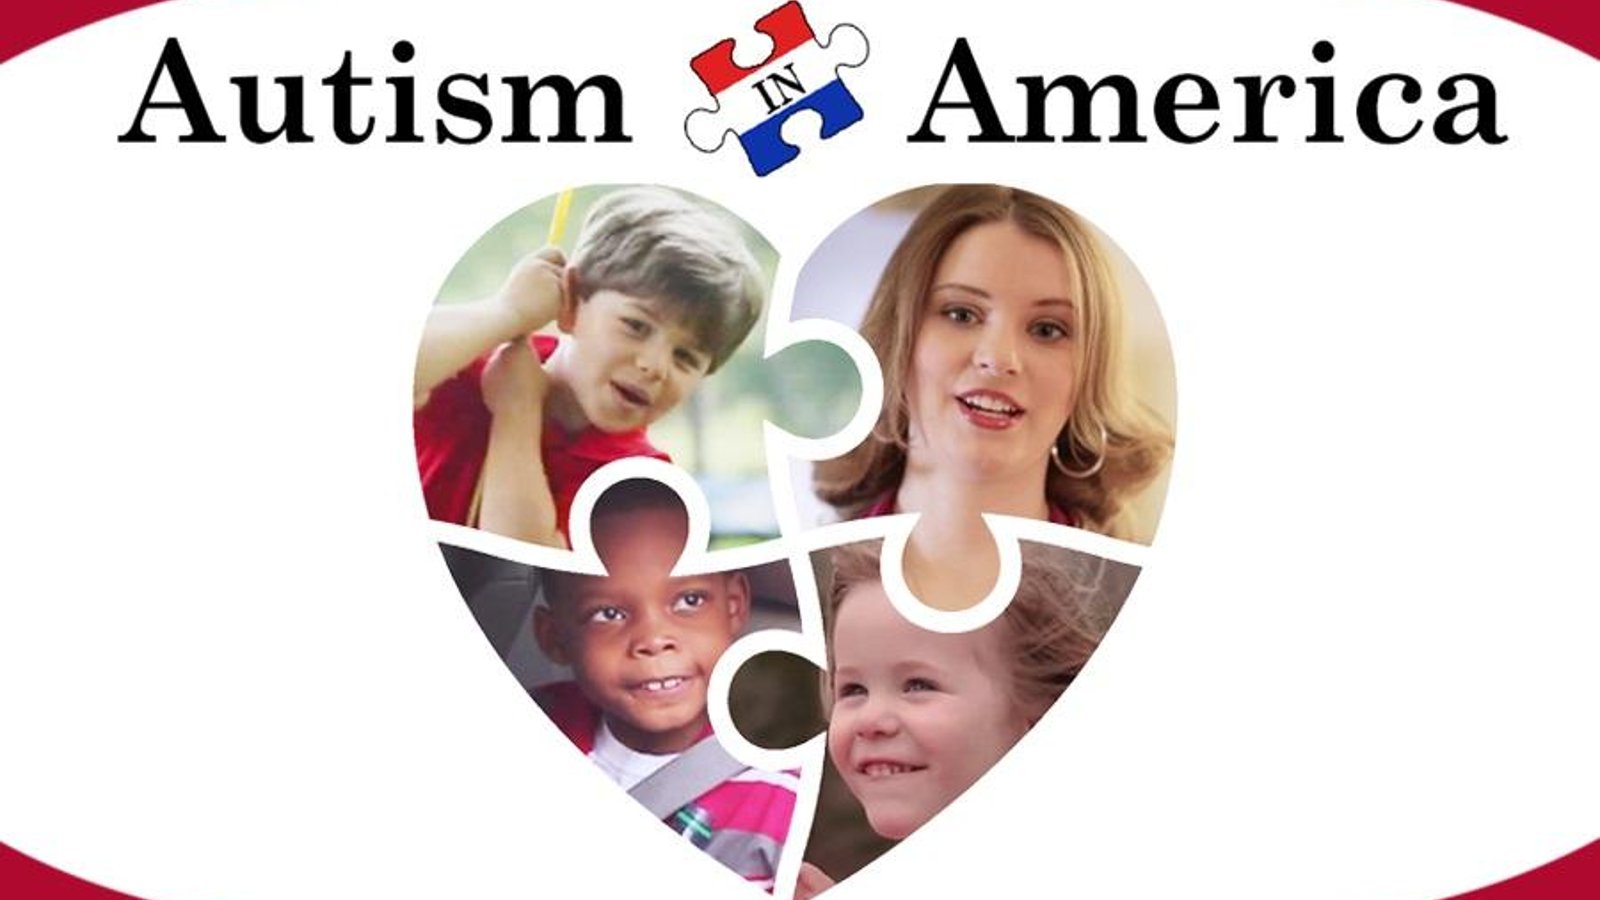 Autism in America